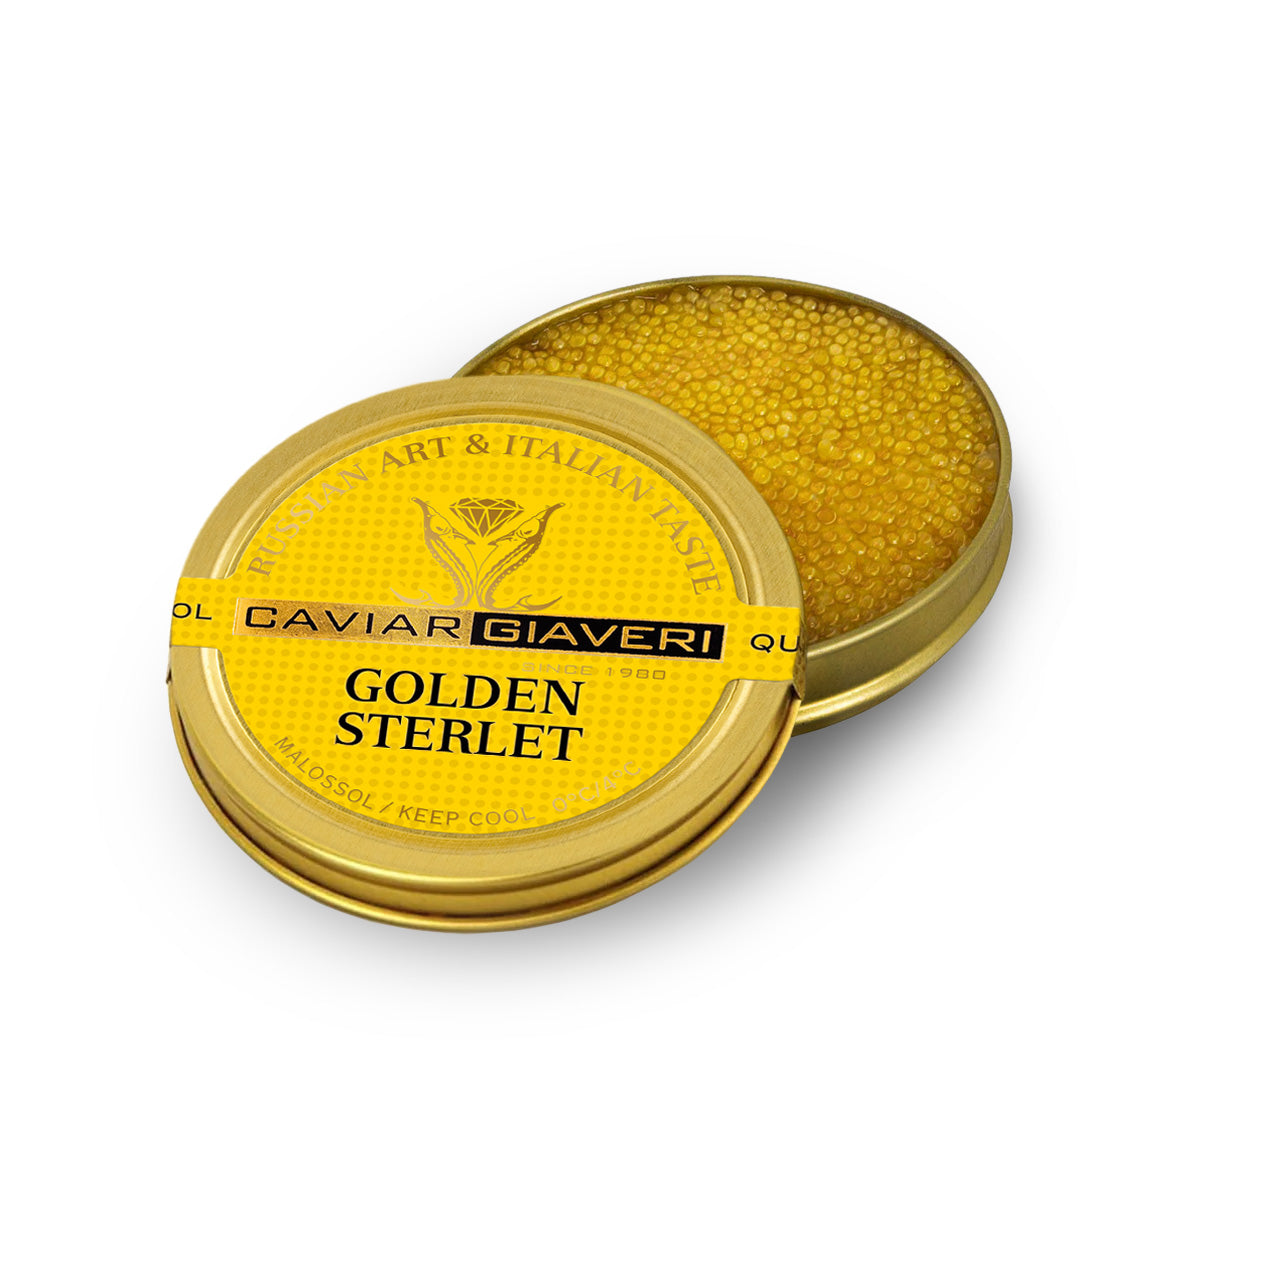 30g Golden Sterlet